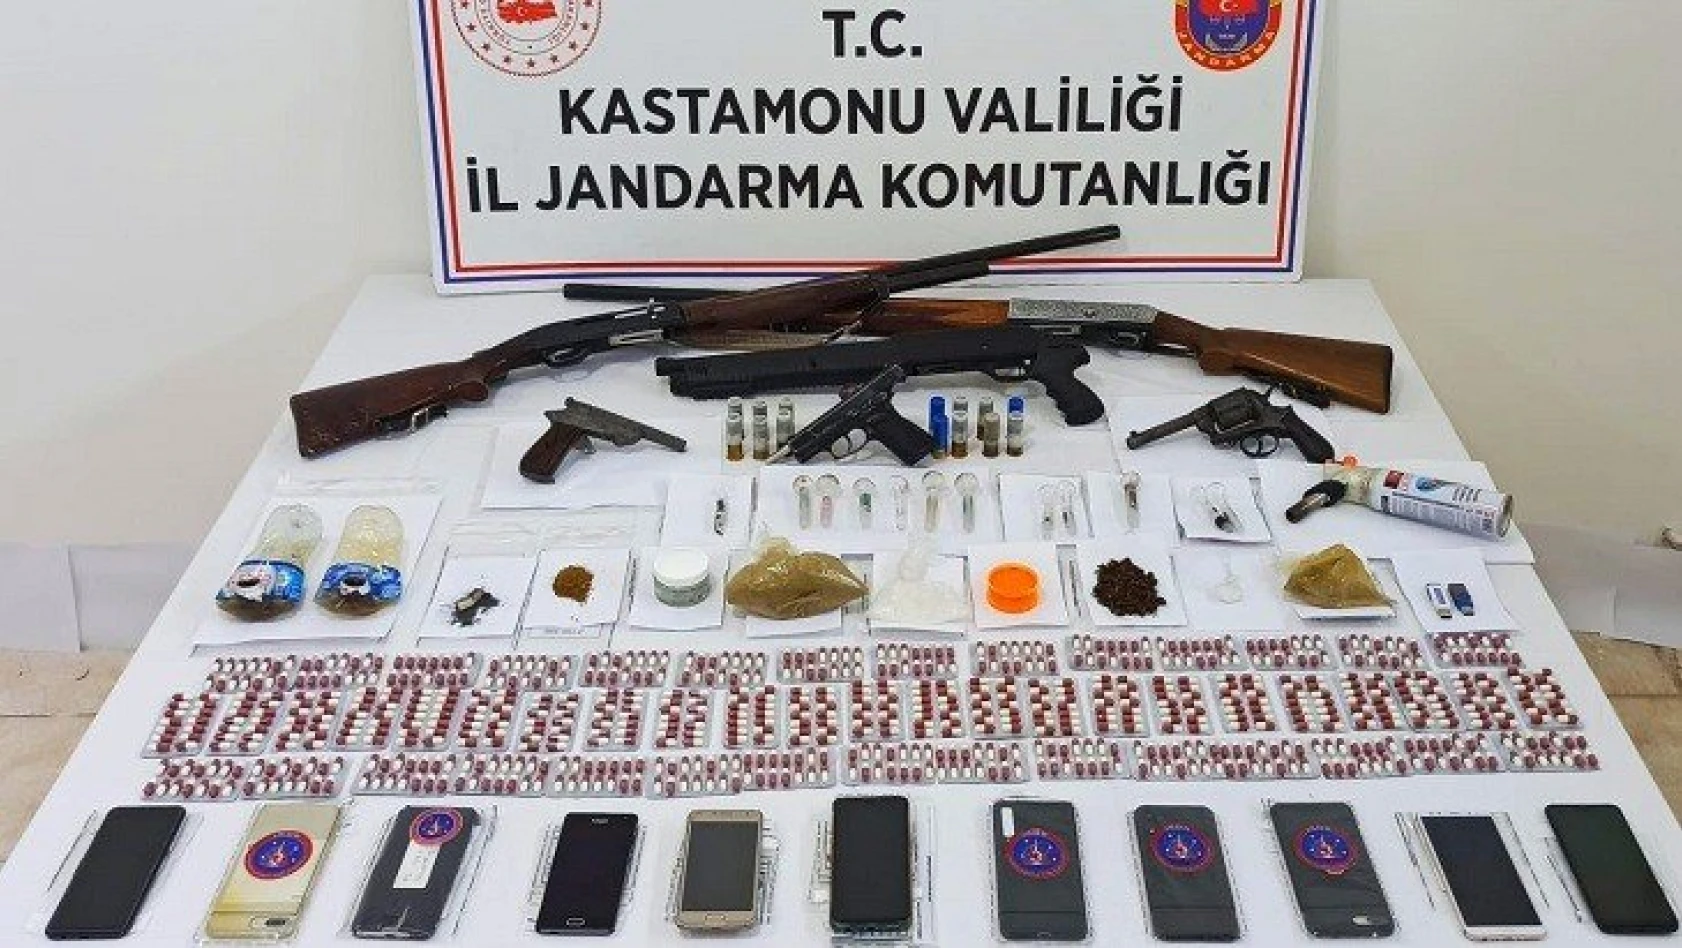 Kastamonu merkezli uyuşturucu operasyonu: 7 gözaltı